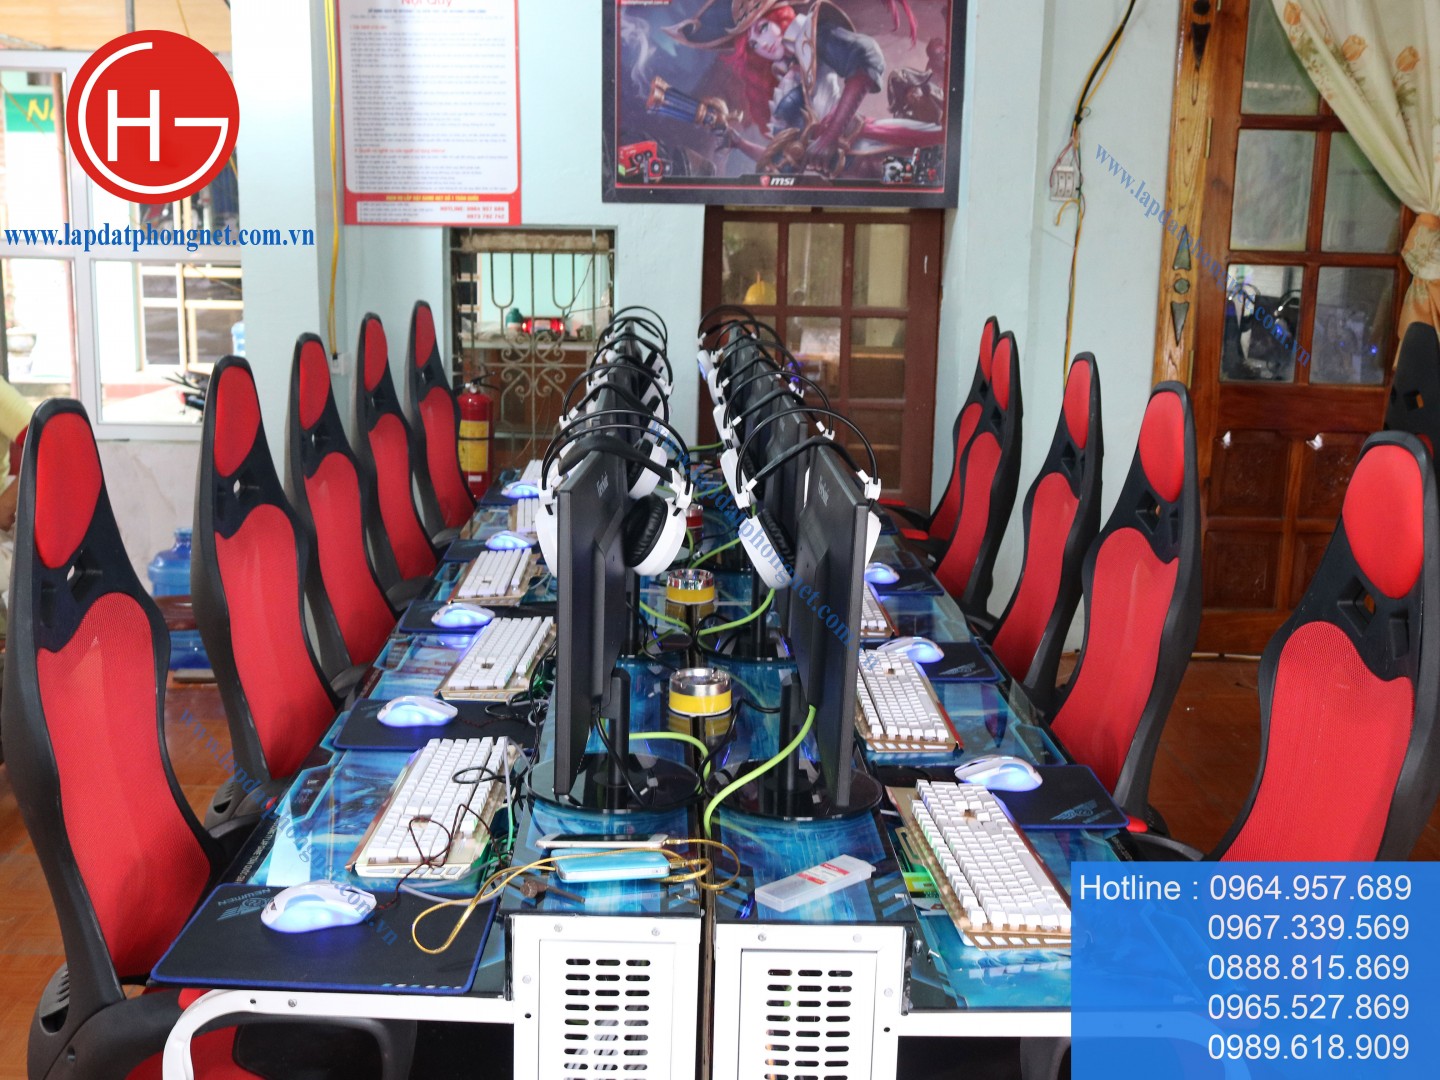 Lắp đặt phòng net trọn gói cho anh Tuấn tại Phú Bình, Thái Nguyên